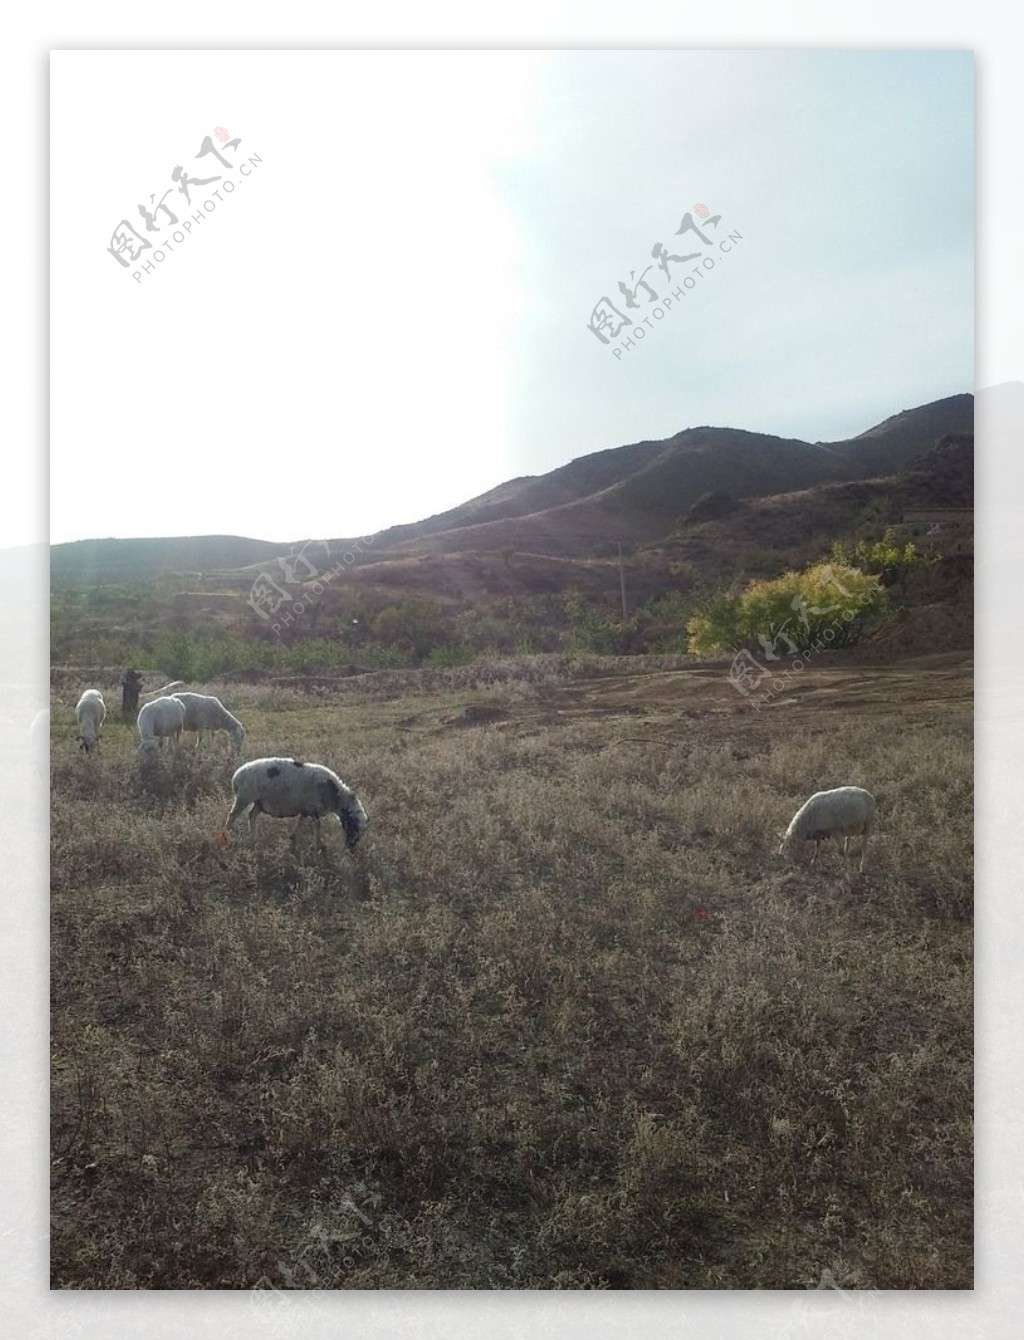 荒原上的羊群